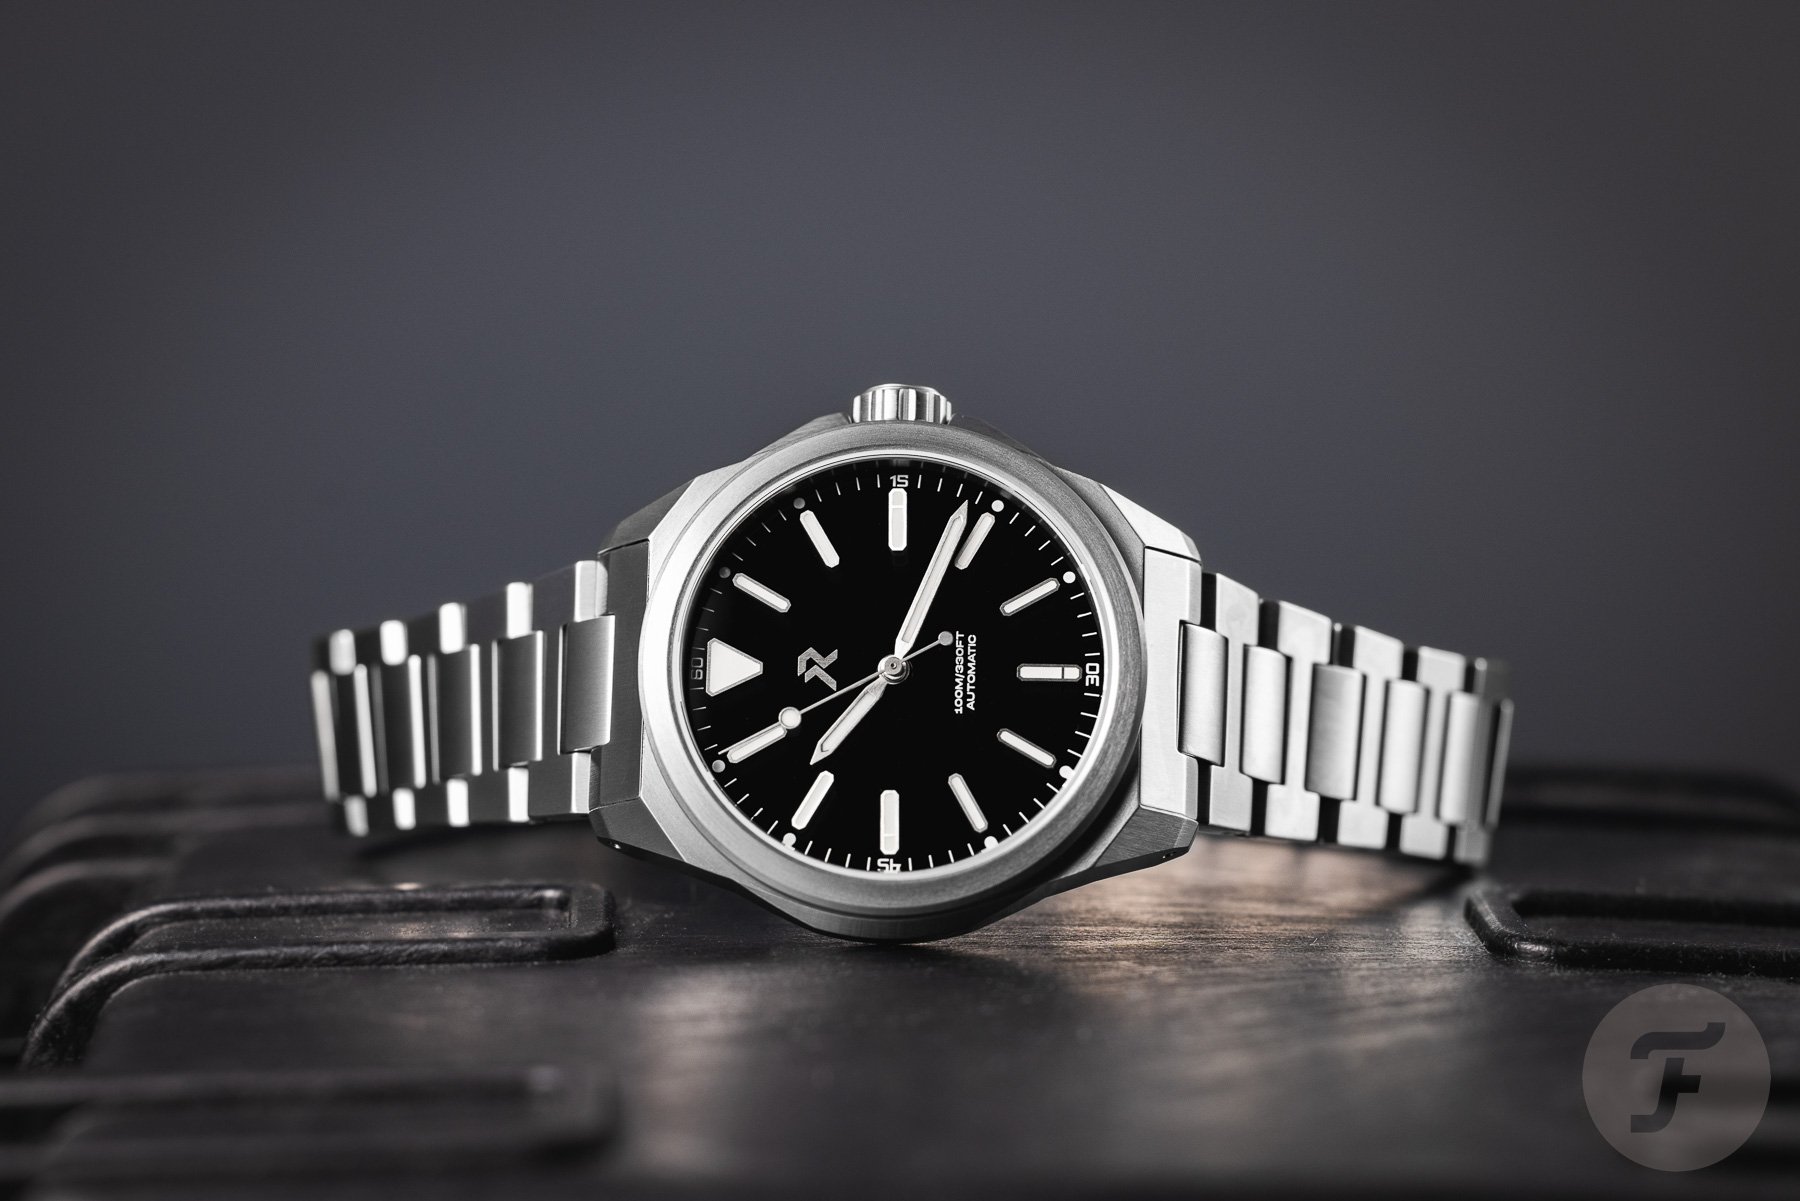 ТОП-3: Лучшие часы стоимостью до €1 000, доступные сегодня